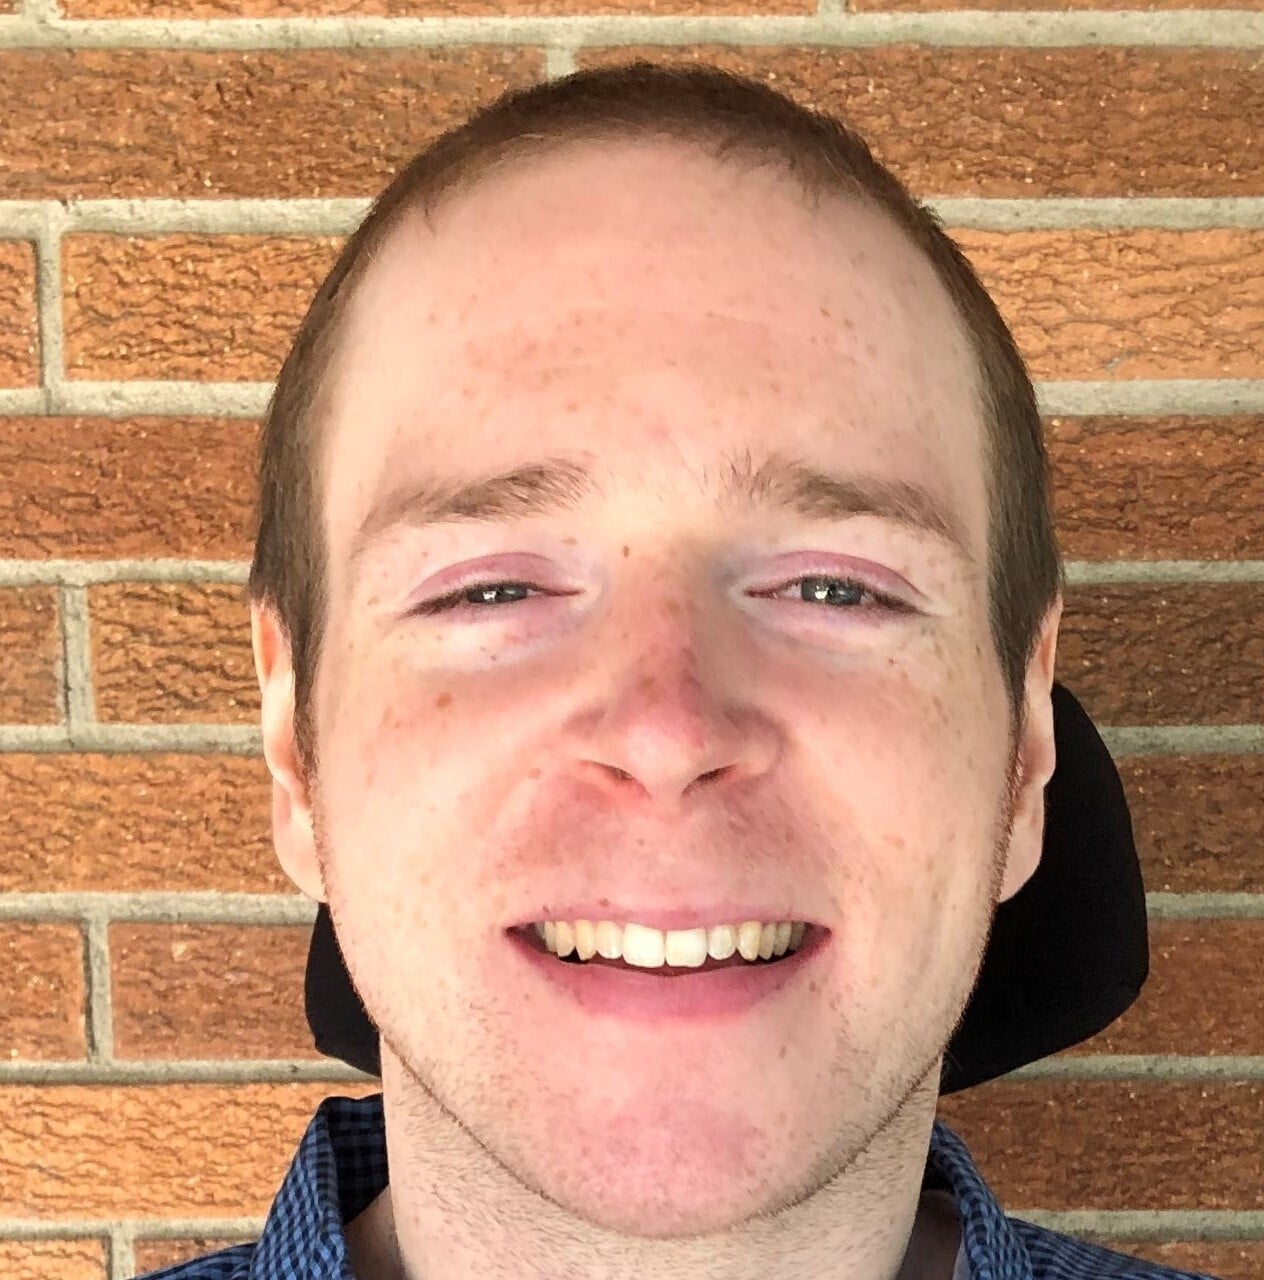 AbleGamers Team member Headshot of Aaron Price, Peer Counselor